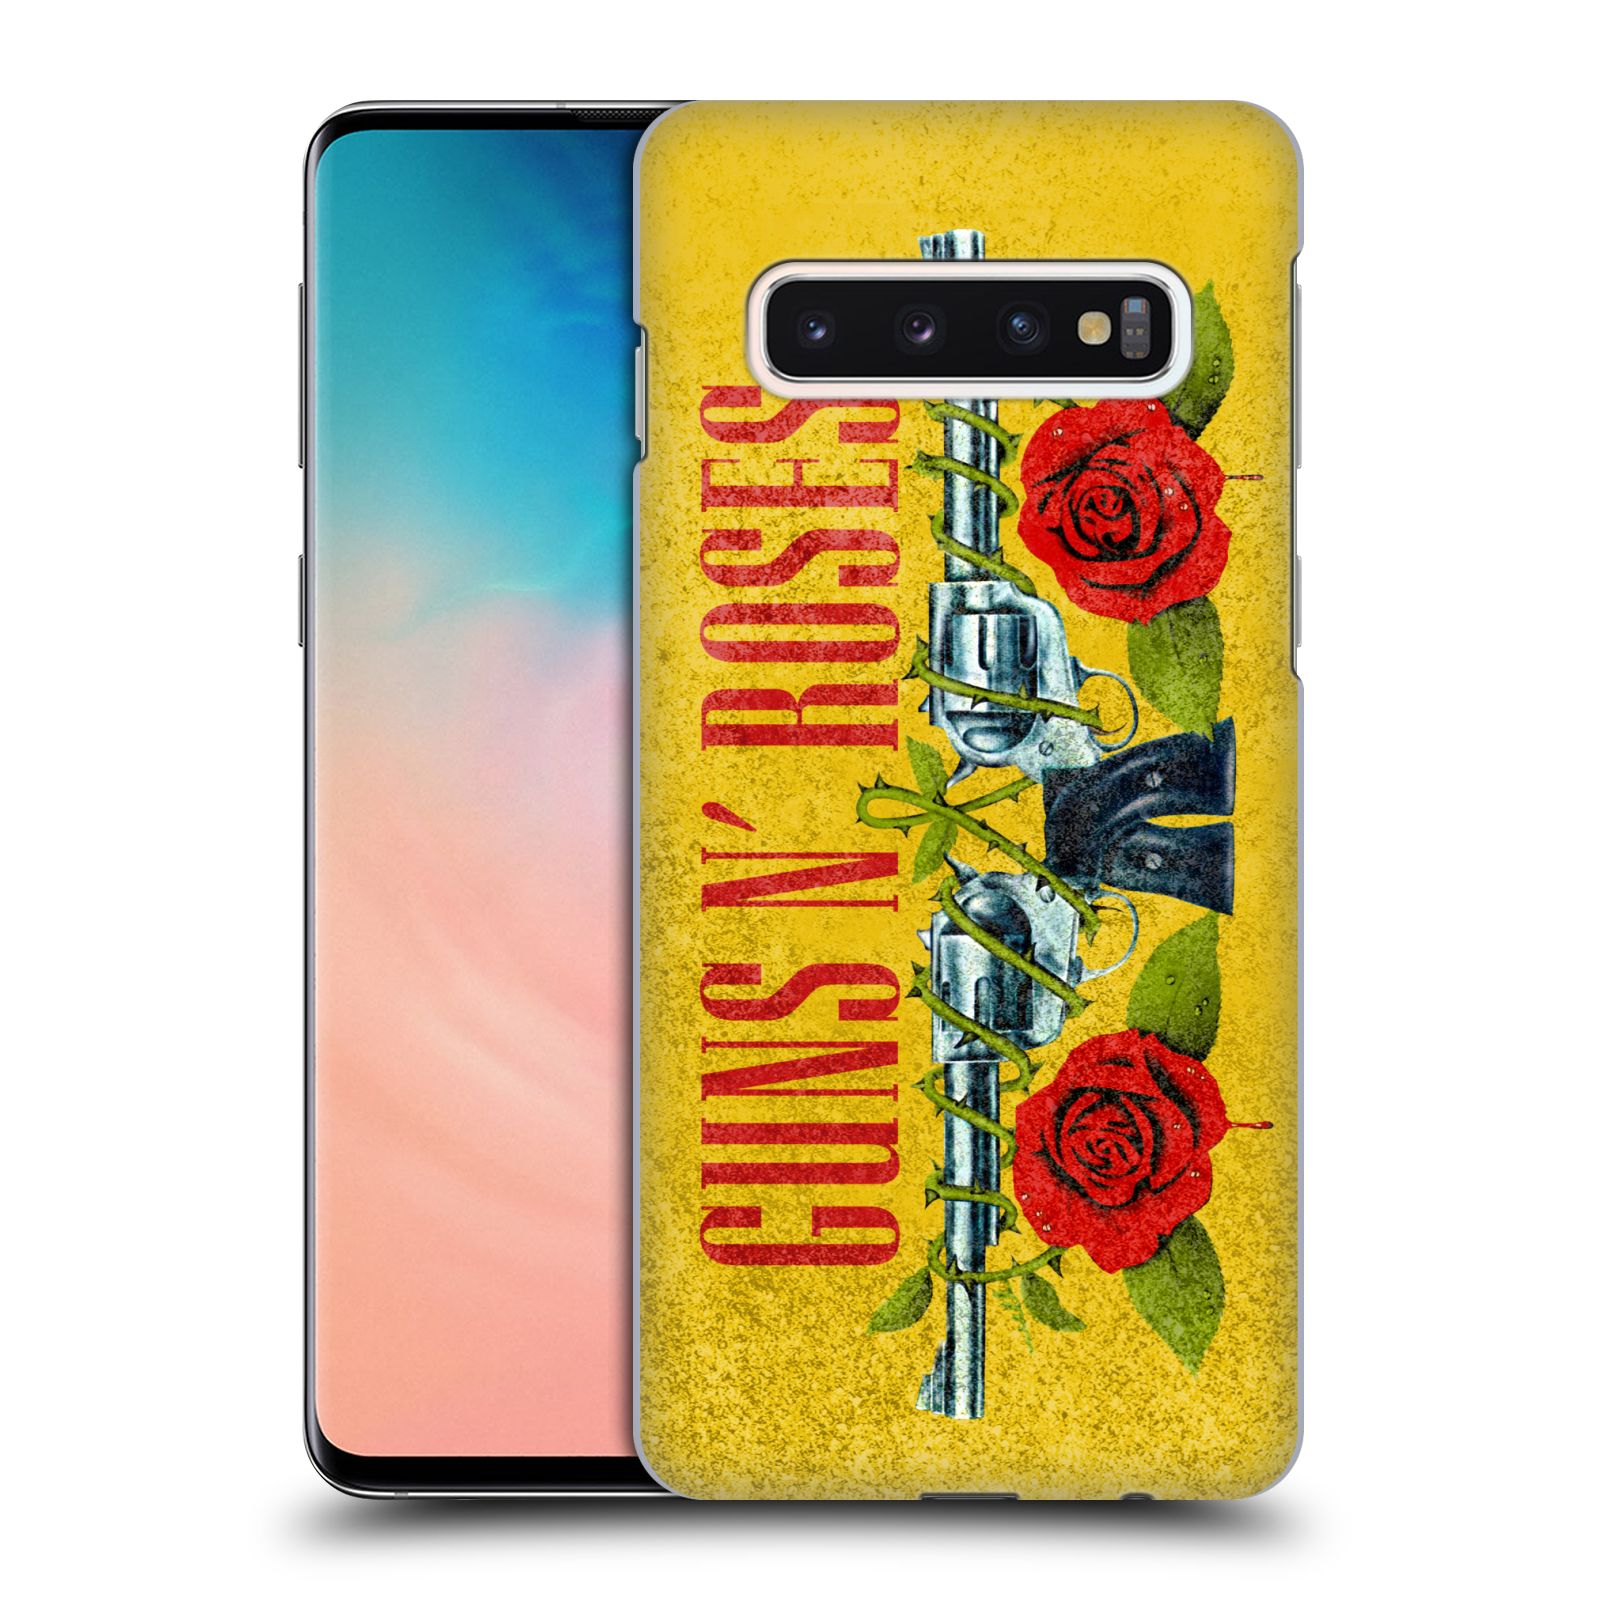 Pouzdro na mobil Samsung Galaxy S10 - HEAD CASE - hudební skupina Guns N Roses pistole a růže žluté pozadí